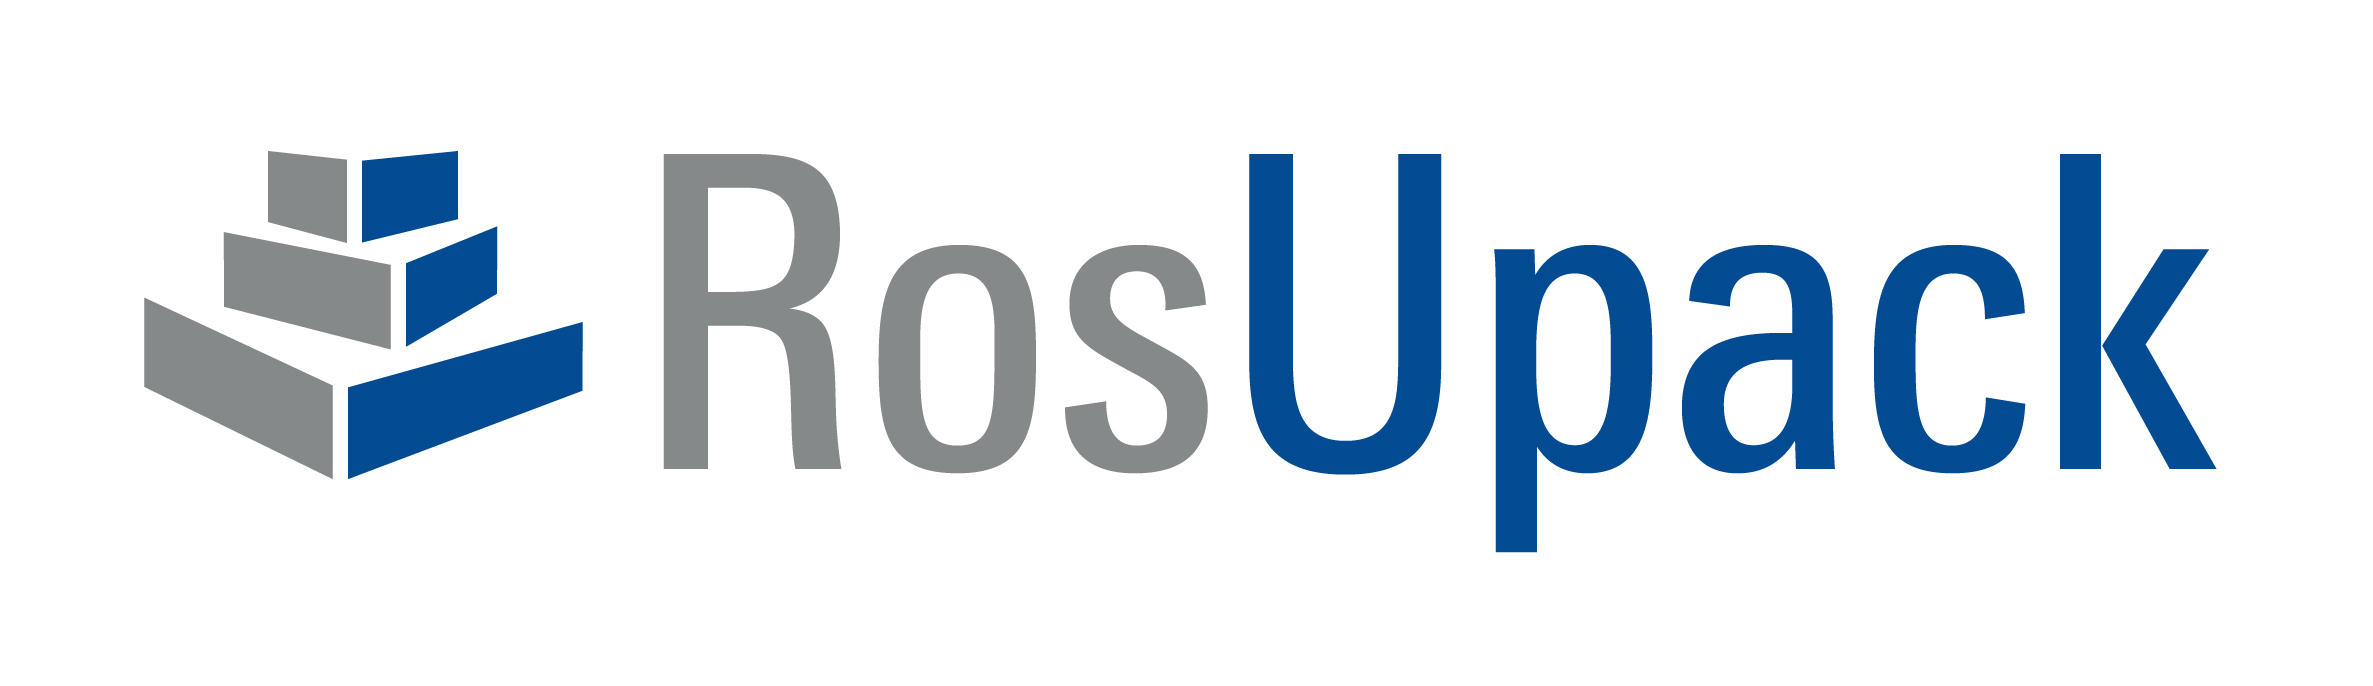 logo_rosupack-01 (1).jpg